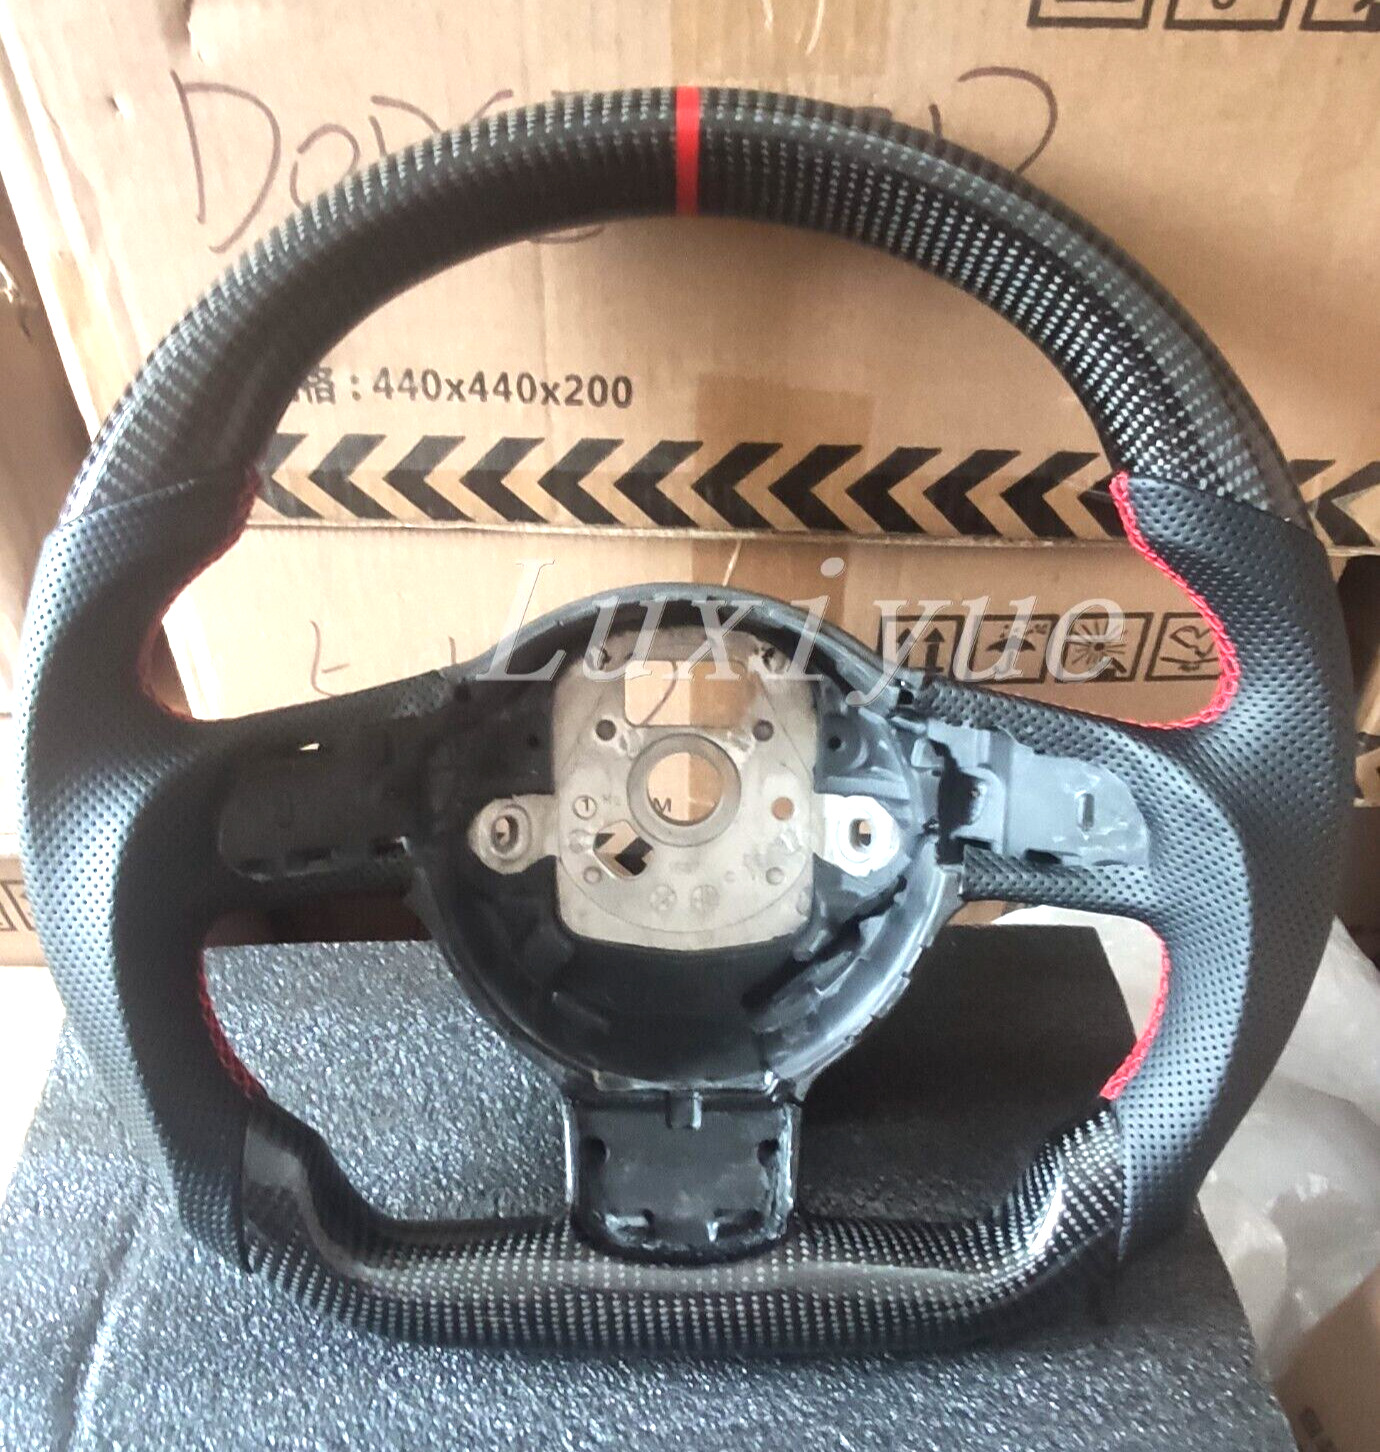 IN STOCK forAudi R8 TT TTRS 2008-2015 New Carbon fiber steering wheel Frame